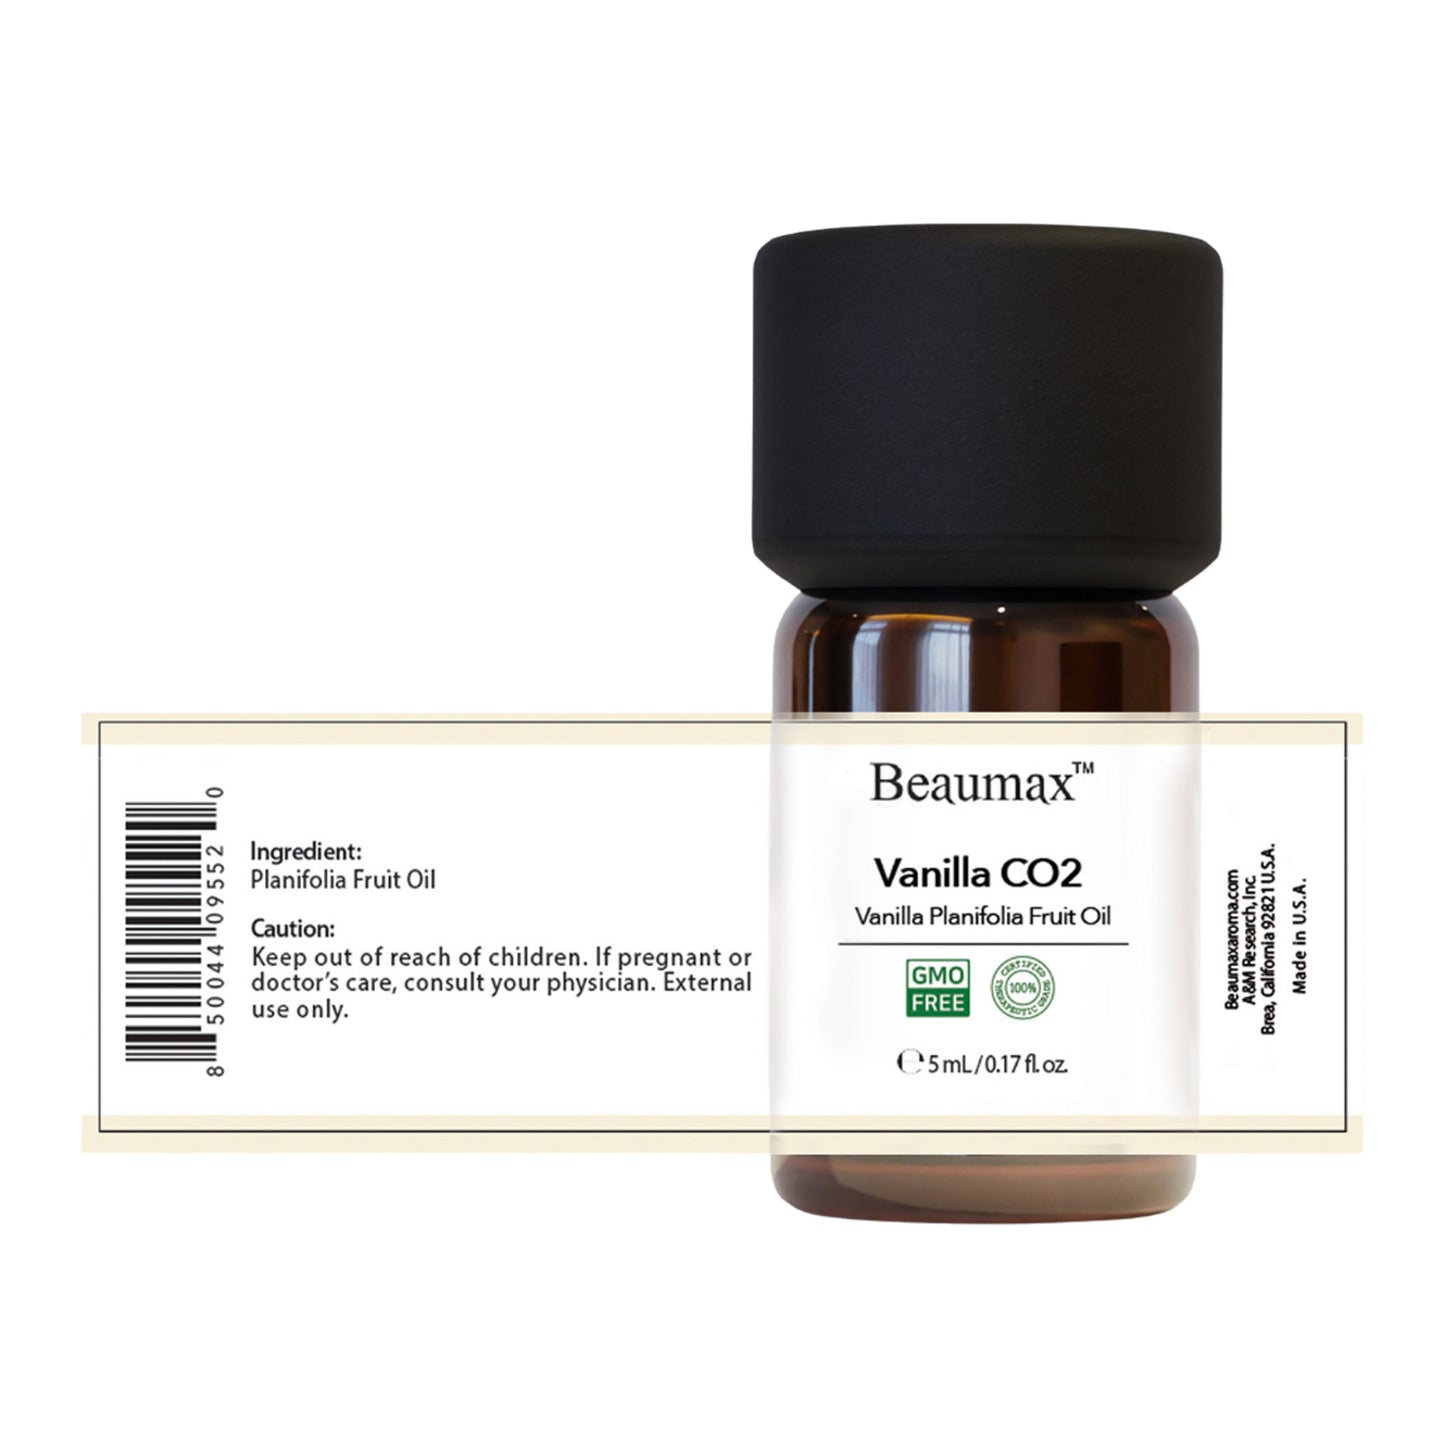 Extrait de Vanille CO2 (Huile de Fruit de Vanille Planifolia) 5ml